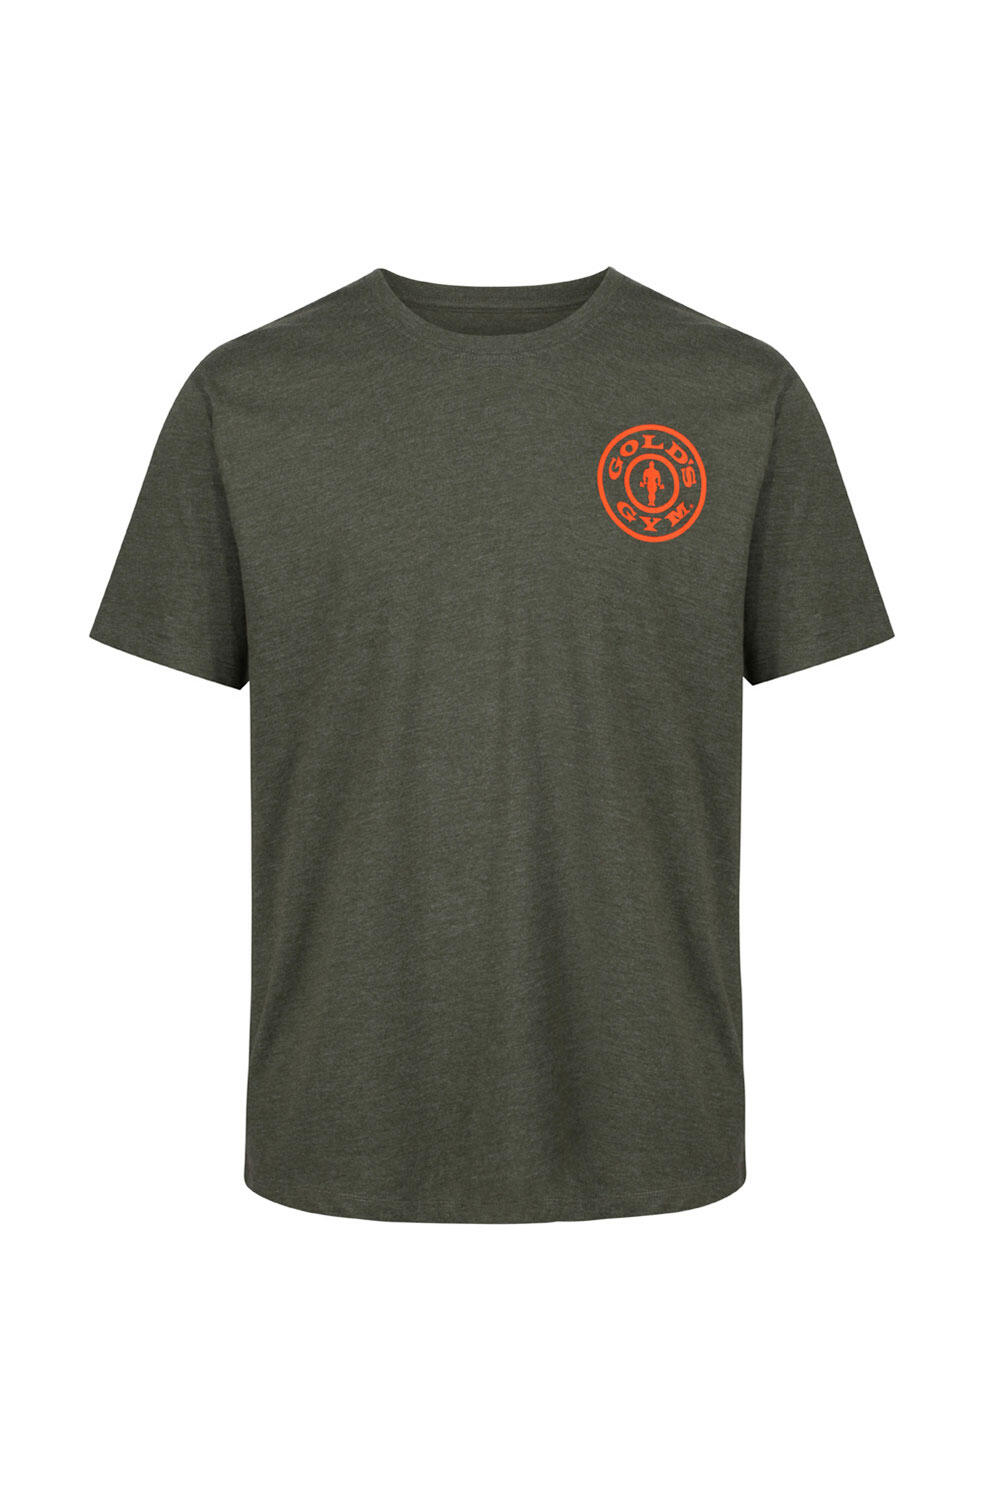 Men's Gold's Gym Left Chest Logo T-Shirt 2/4